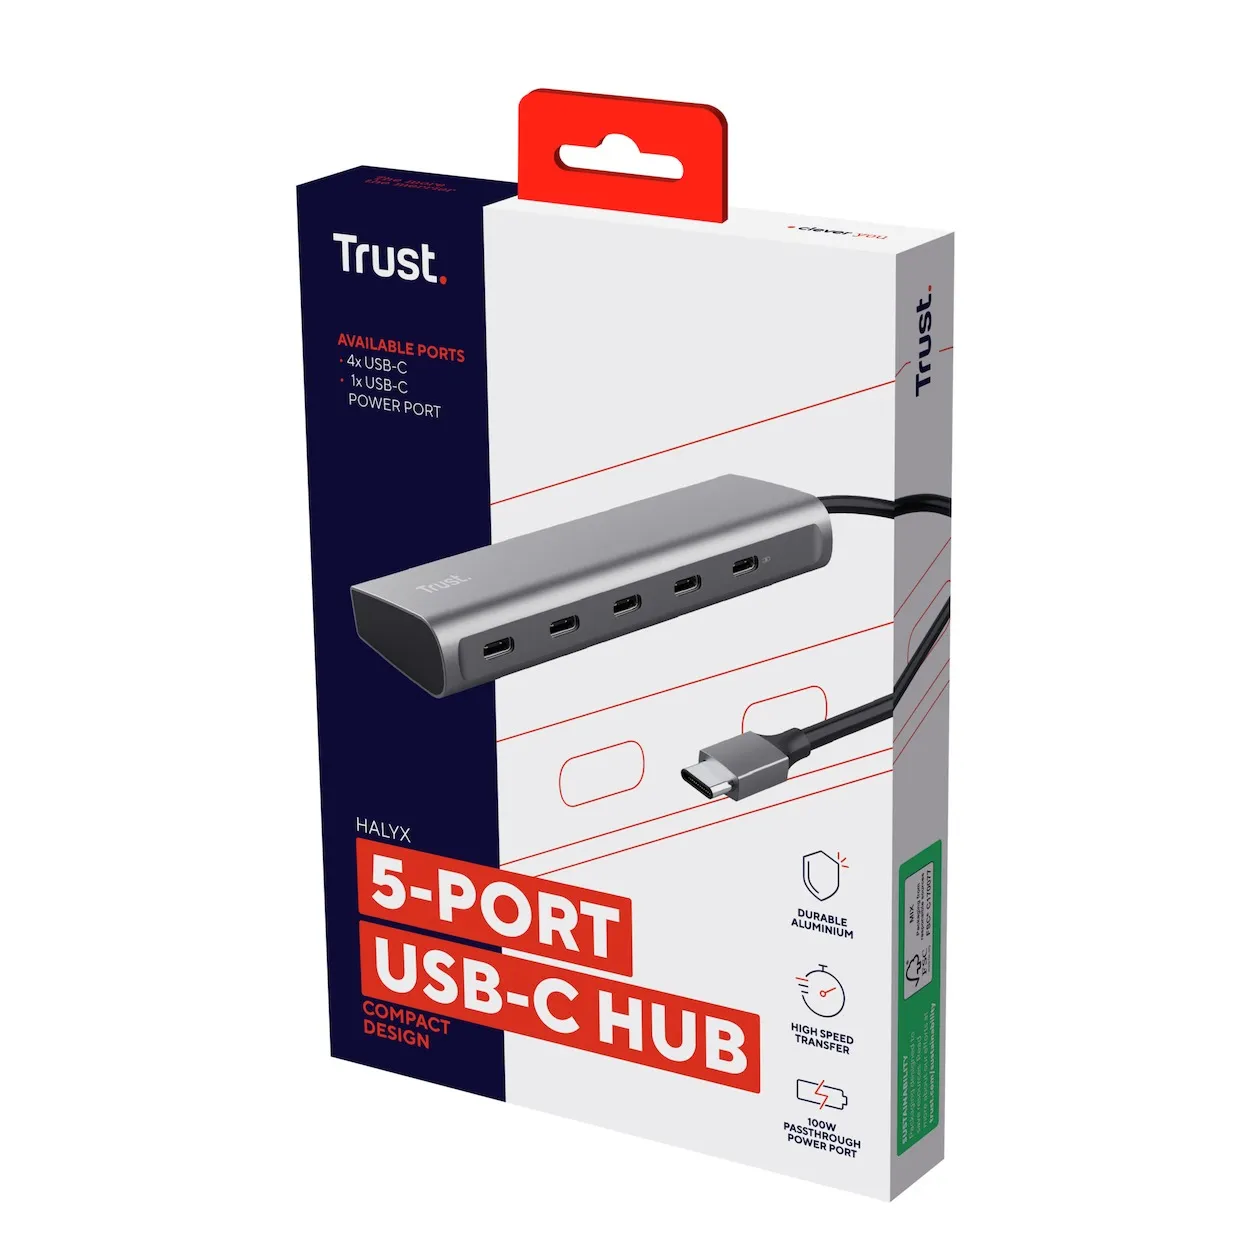 Trust HALYX 5 PORT USB-C HUB